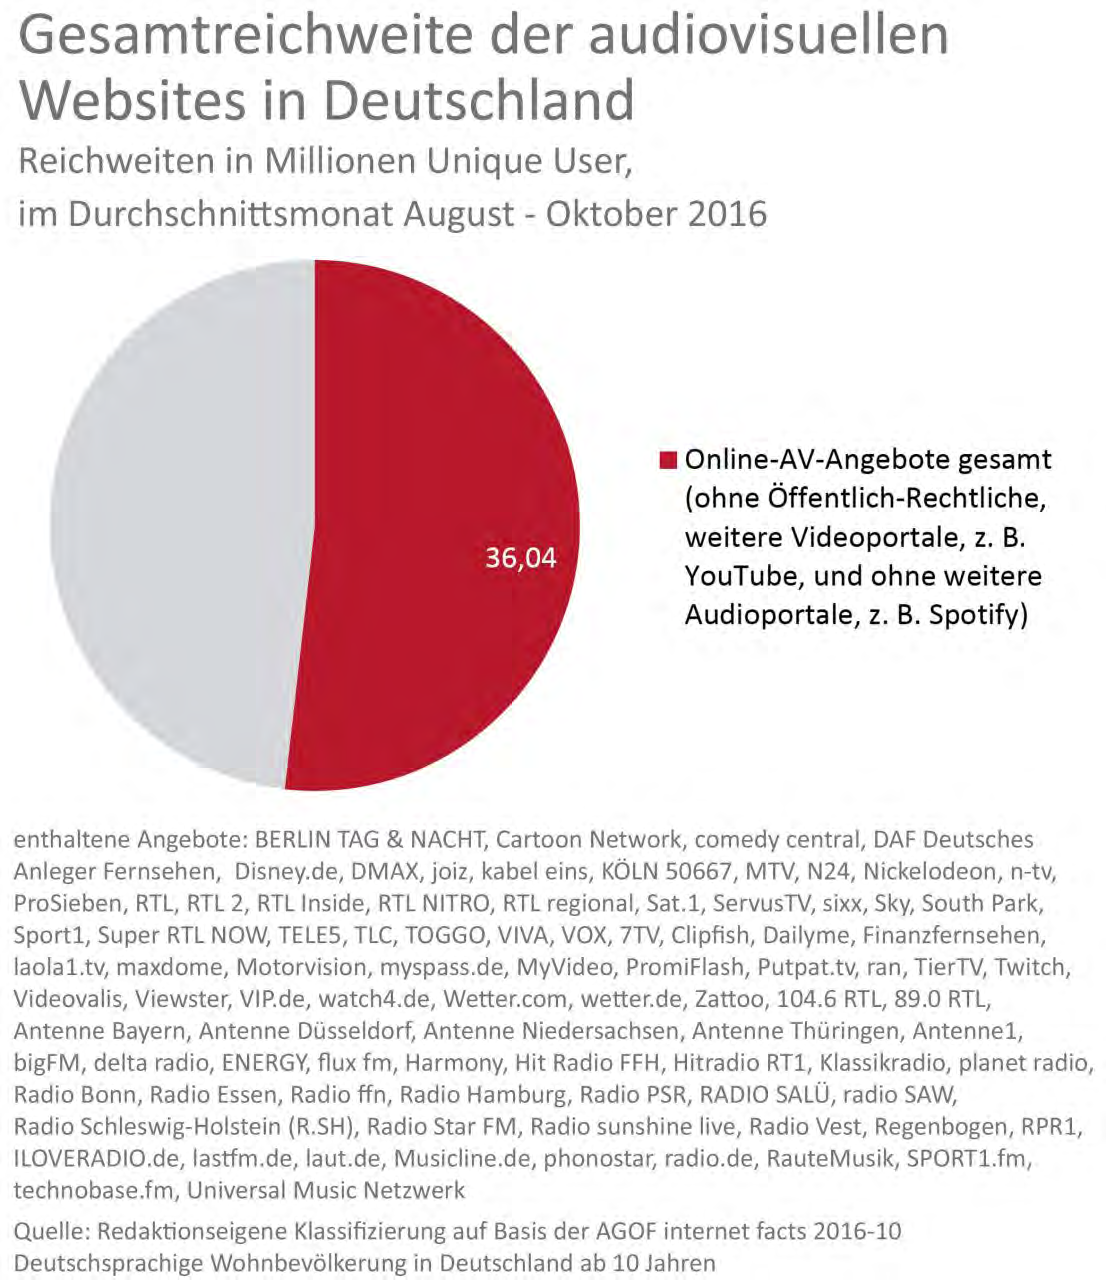 Audio- und Videowebsites Audio- und Videowebsites Die privaten Radio- und Audio- sowie TV- und Videoportale in Deutschland hatten im durchschnittlichen Monat (August Oktober 2016) eine gemeinsame